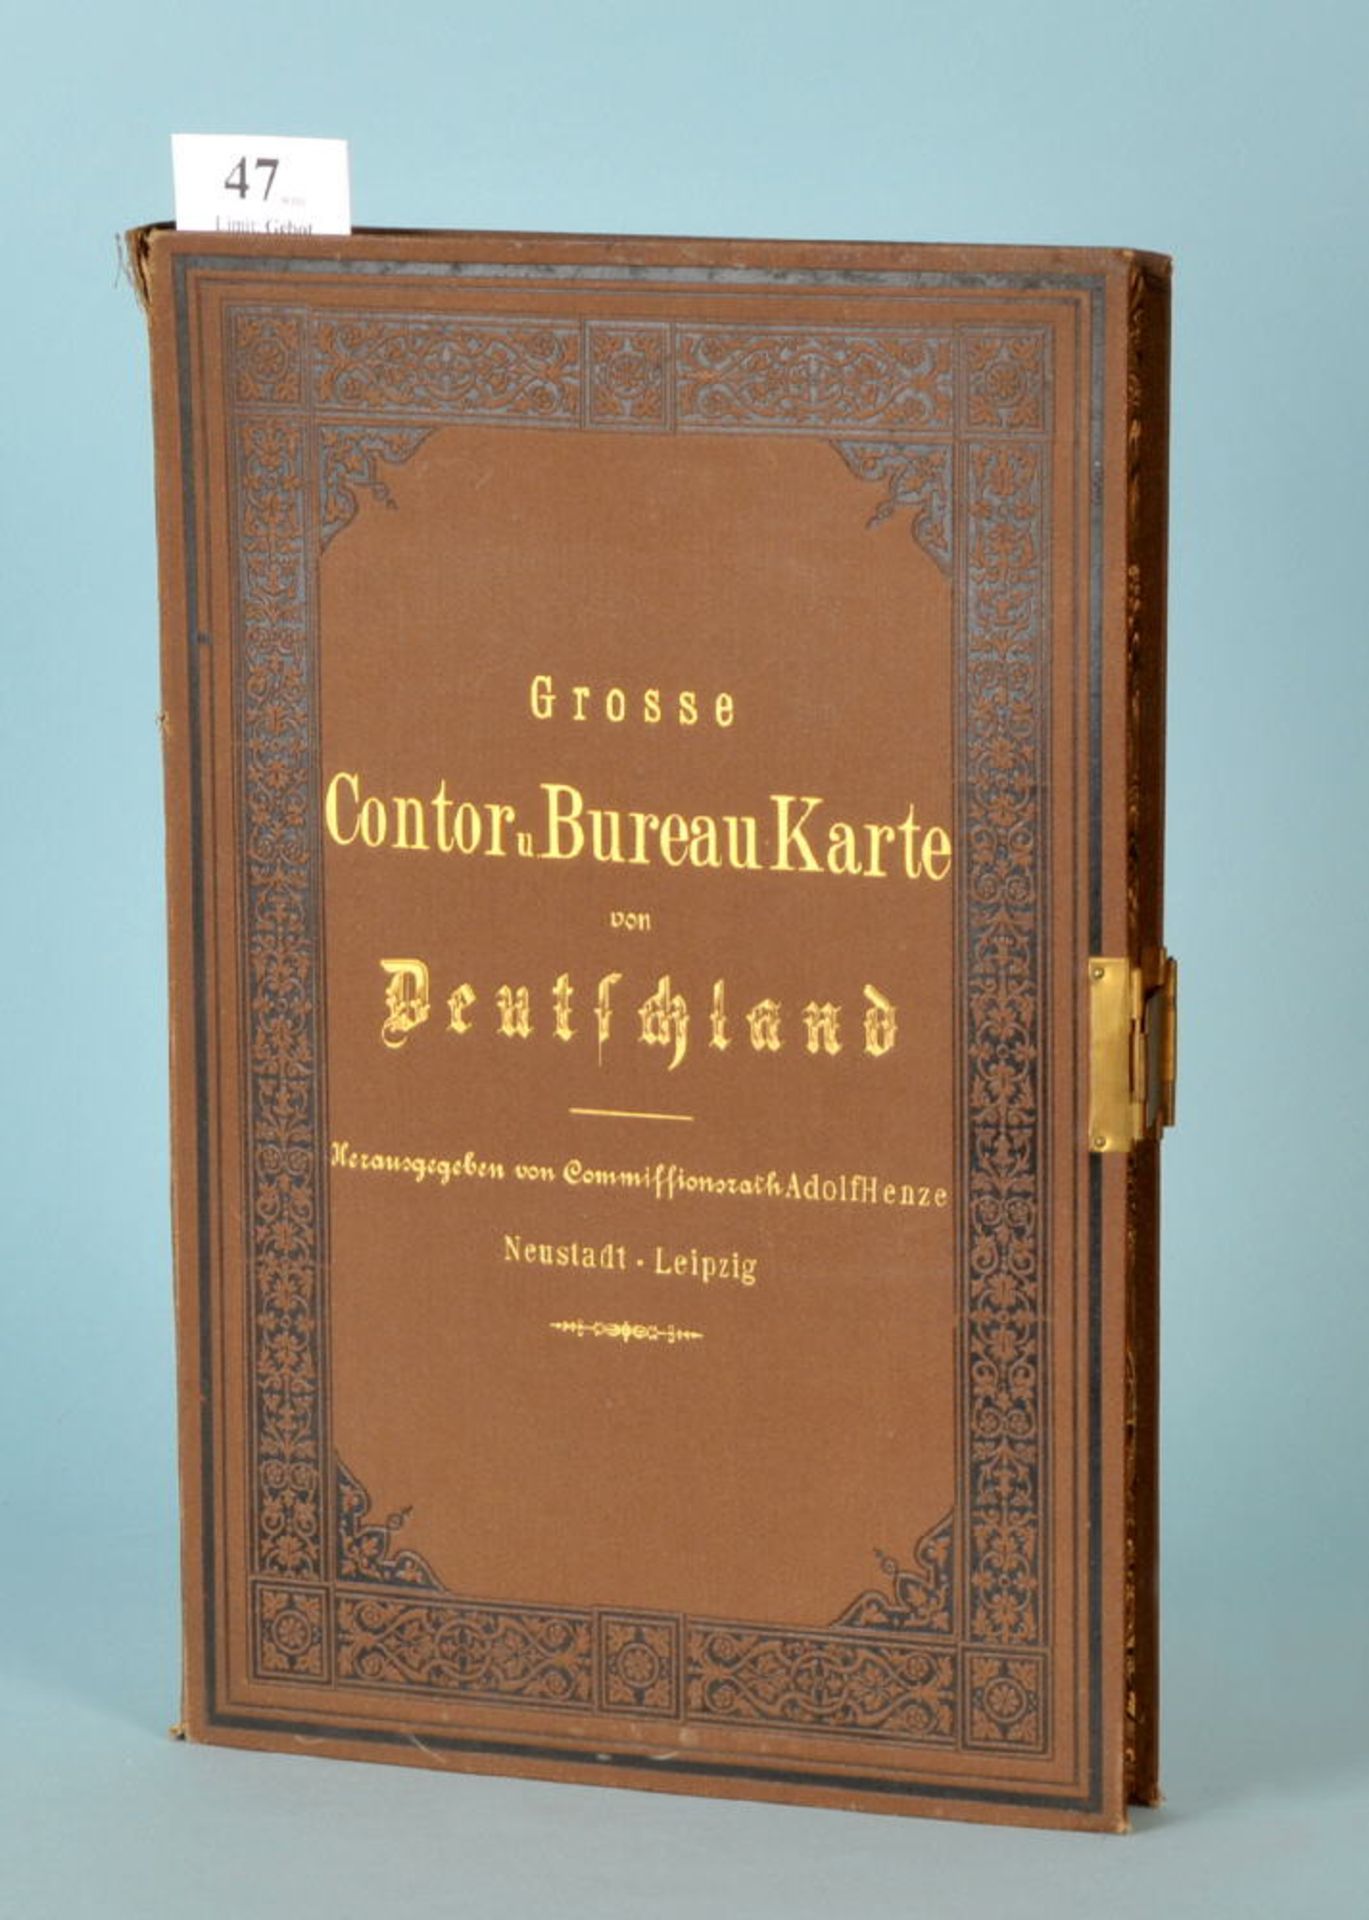 Henze, Adolf "Grosse Contor- und Bureau-Karte von Deutschland"Kassette mit großer Faltkarte, auf